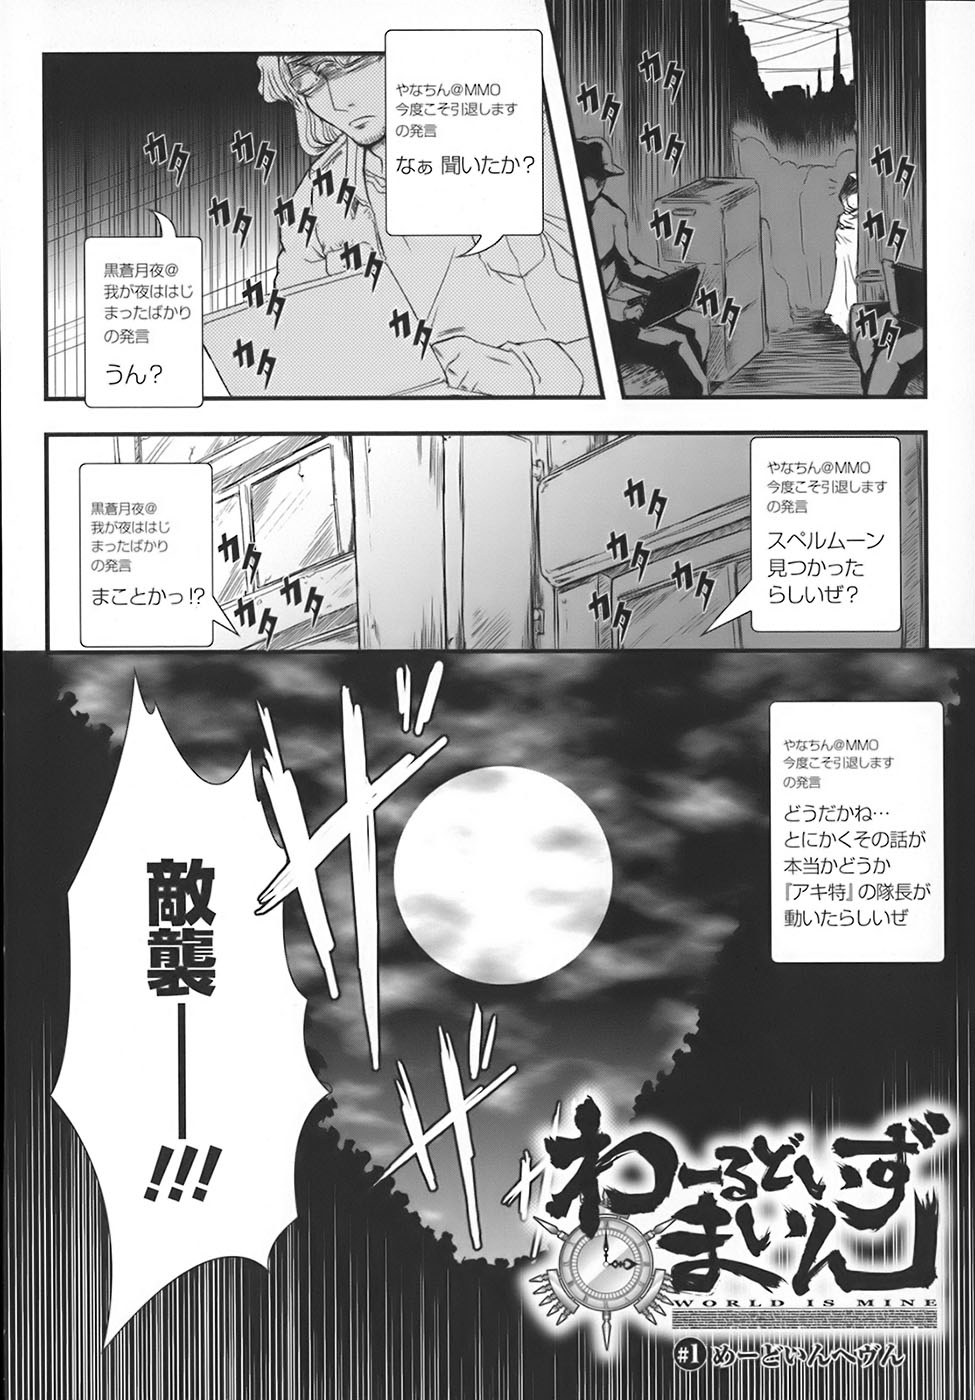 [Oohashi Takayuki] World is mine page 7 full